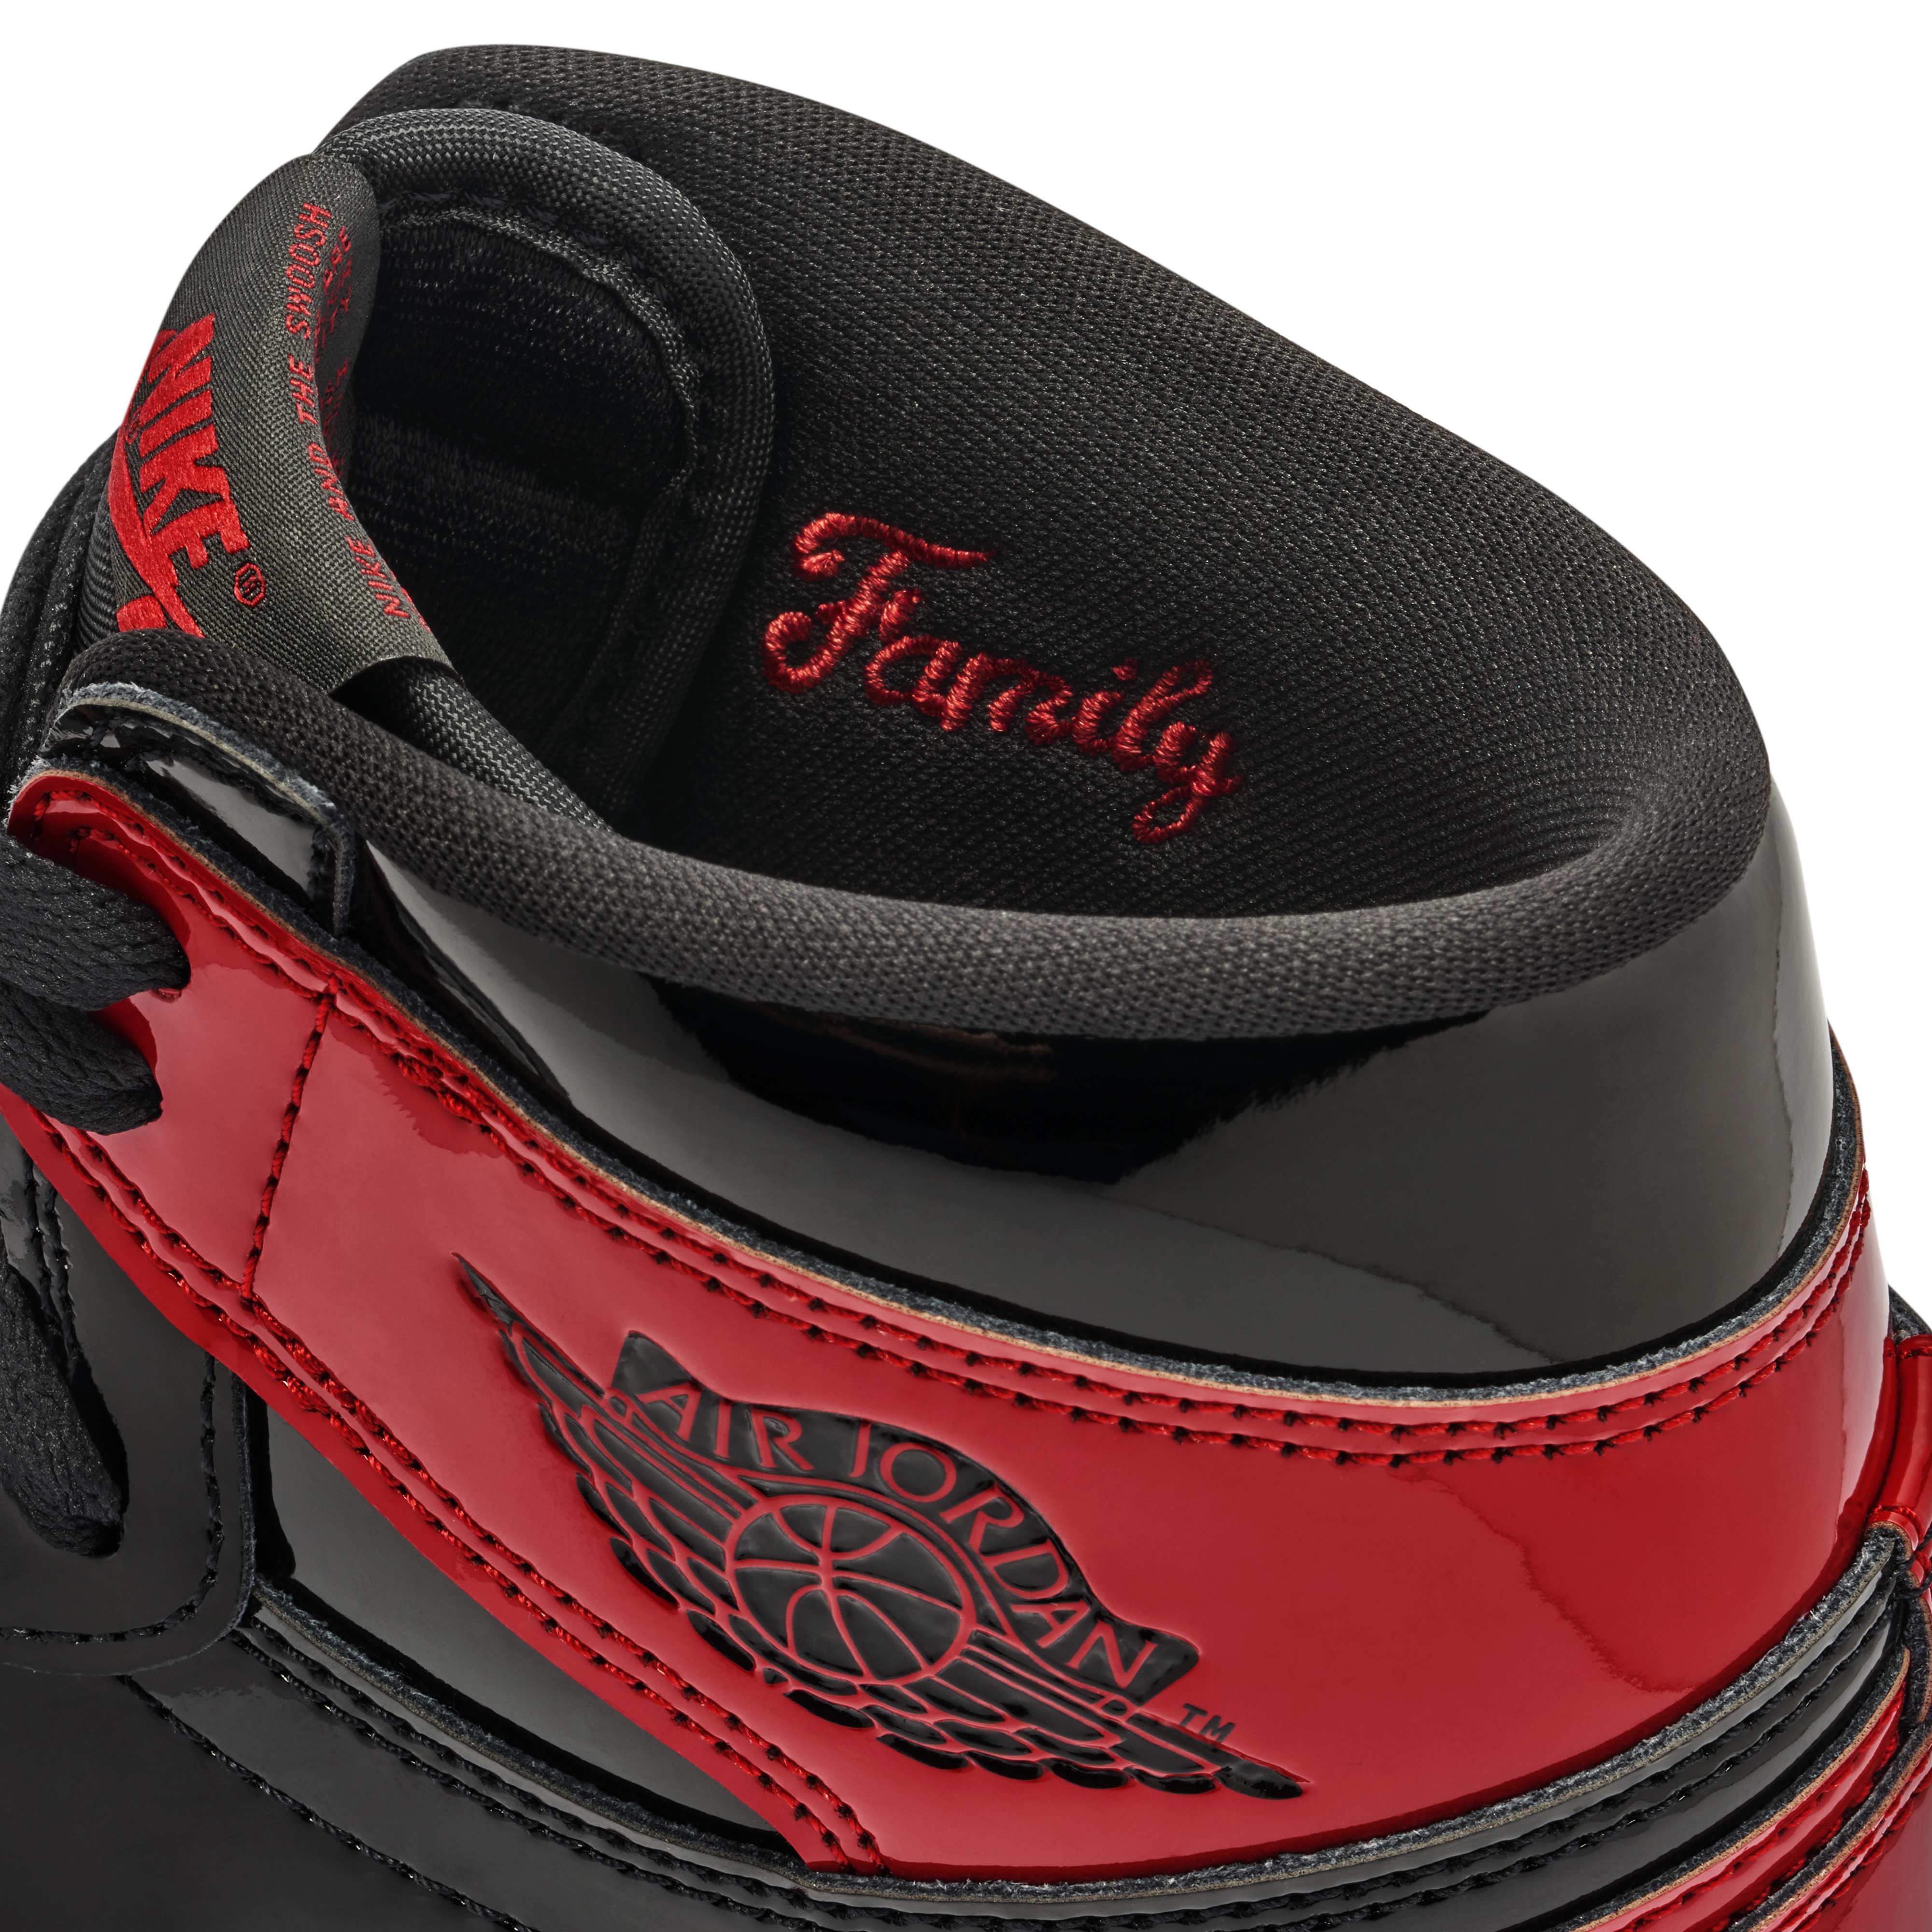 Nike Air Jordan 1 Retro High OG Patent Bred – The Darkside